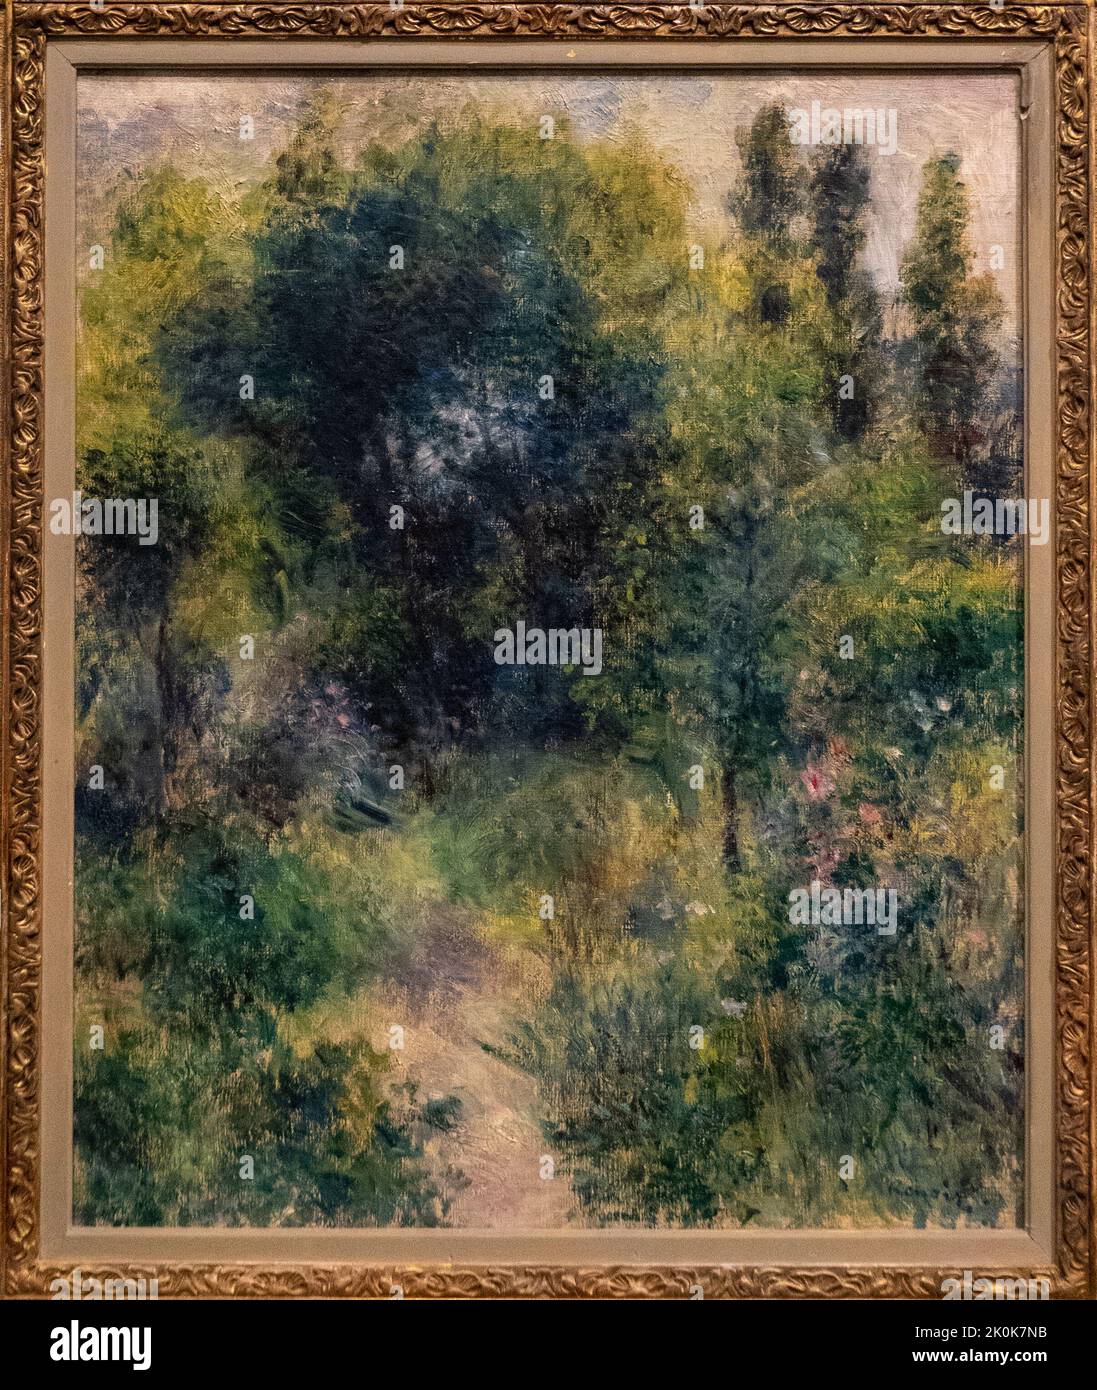 The garden by Renoir, 1877 Stock Photo